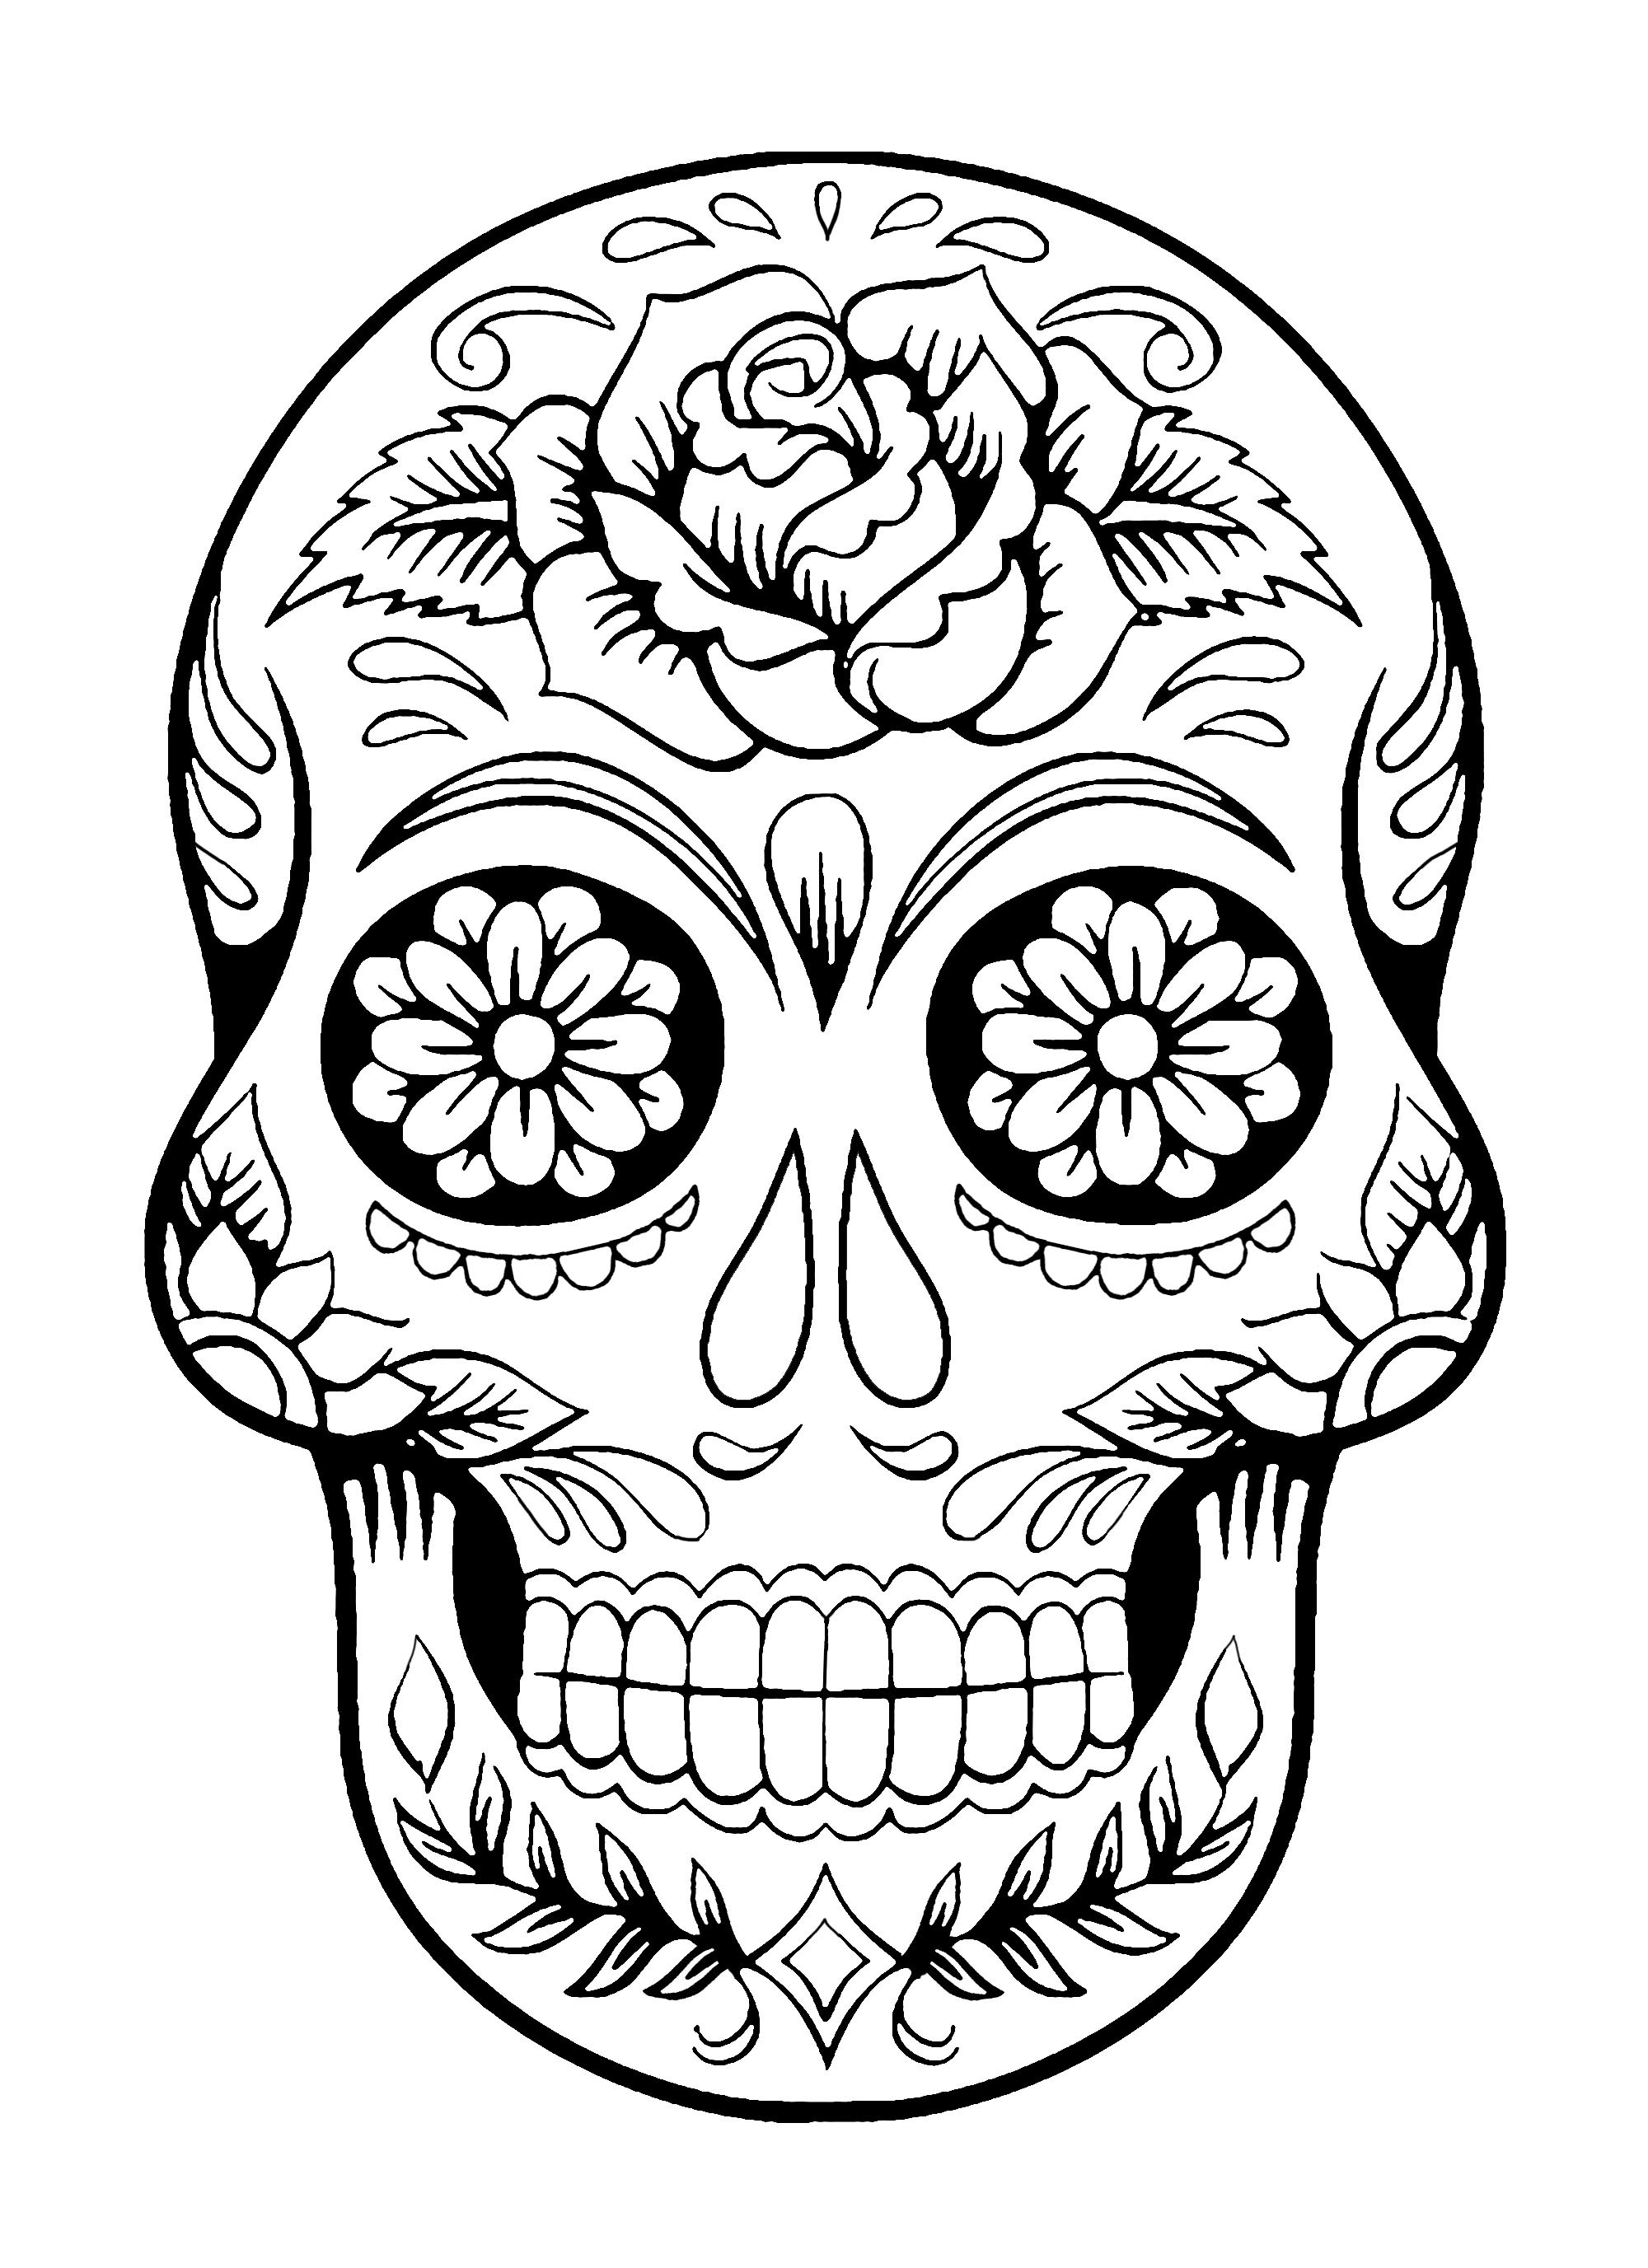 El Día de los Muertos / Day of the dead coloring page : Skull - 4, Artist : Art. Isabelle